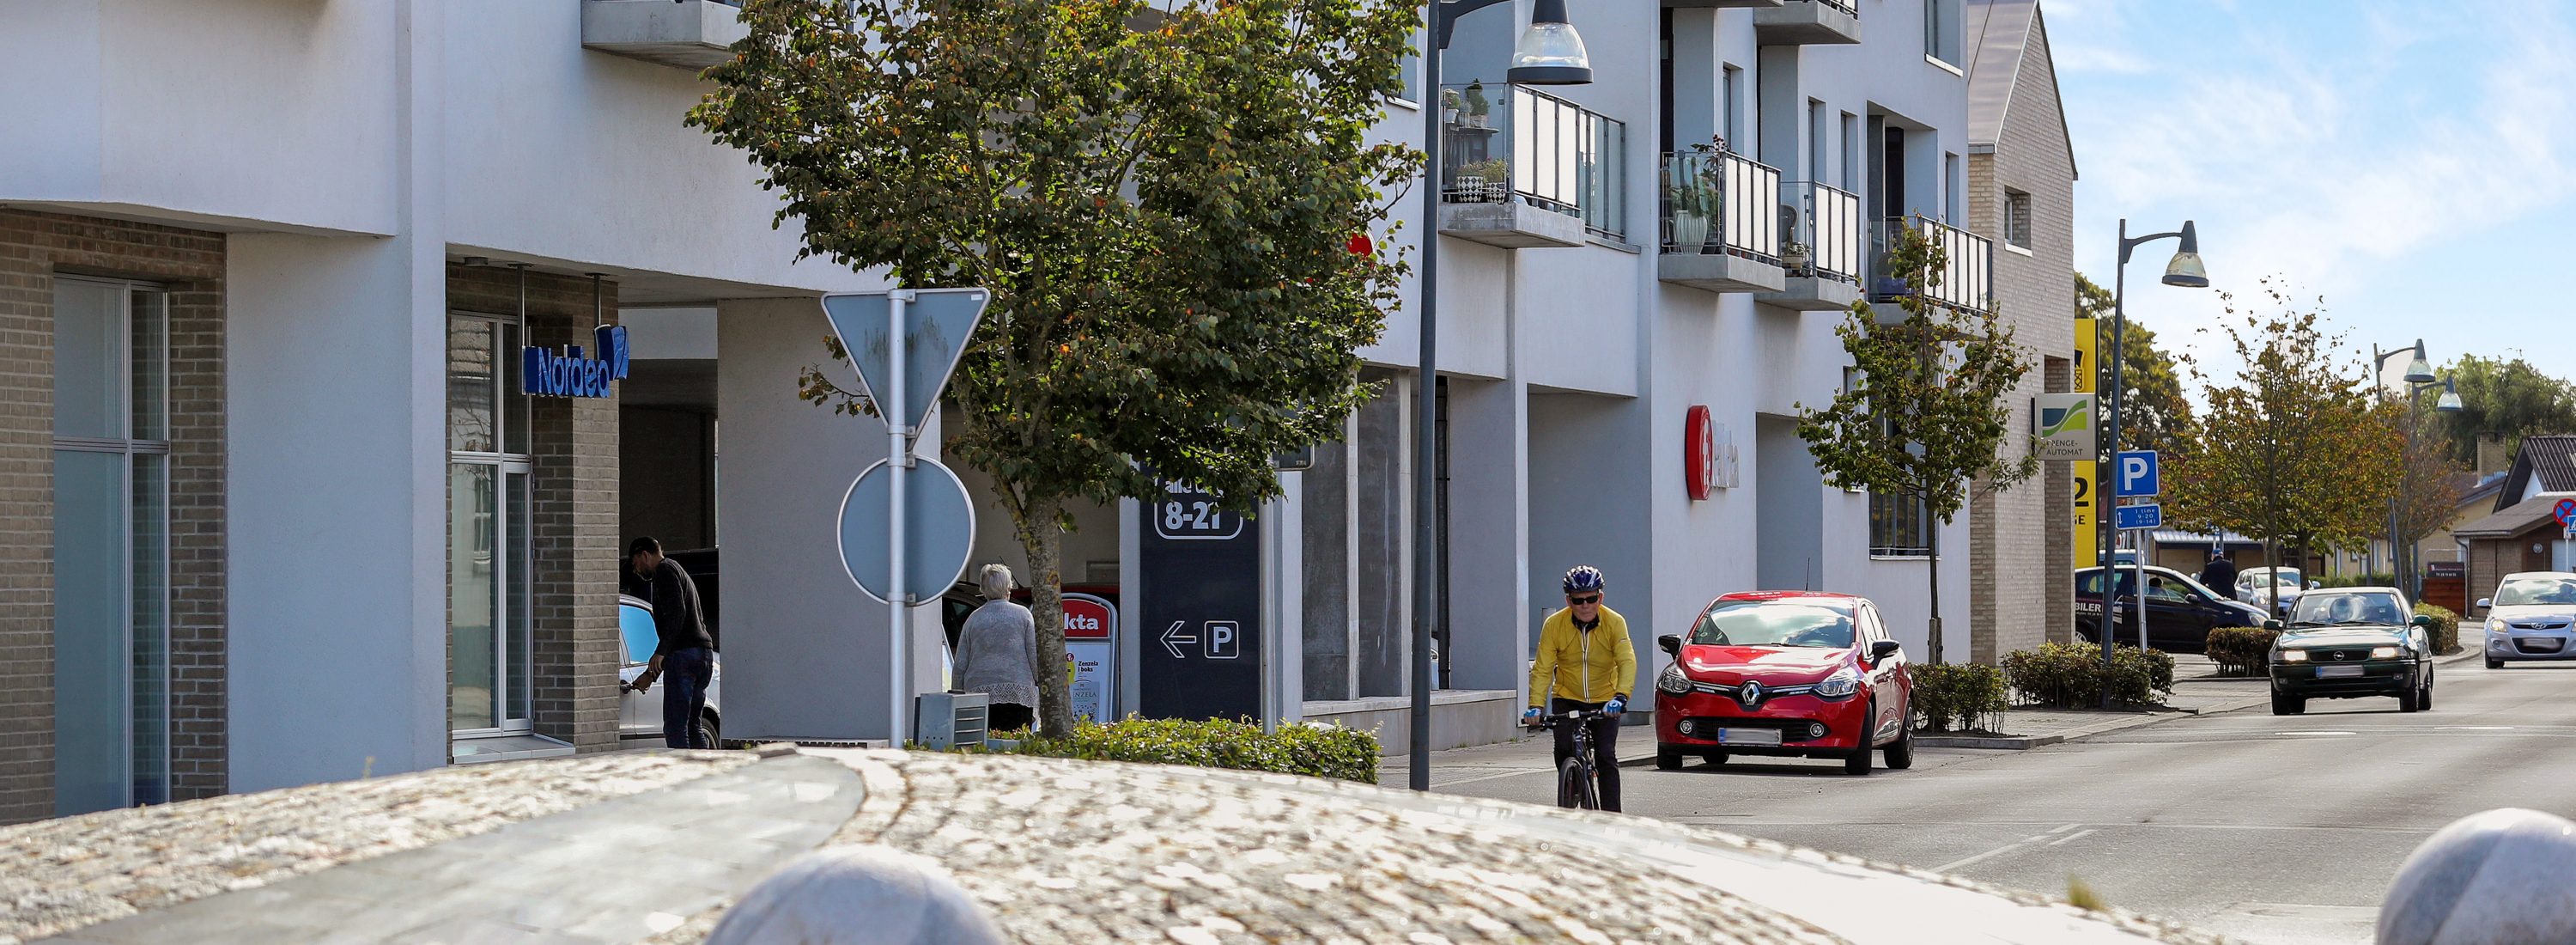 En cyklist kører gennem en gade i Aabybro.